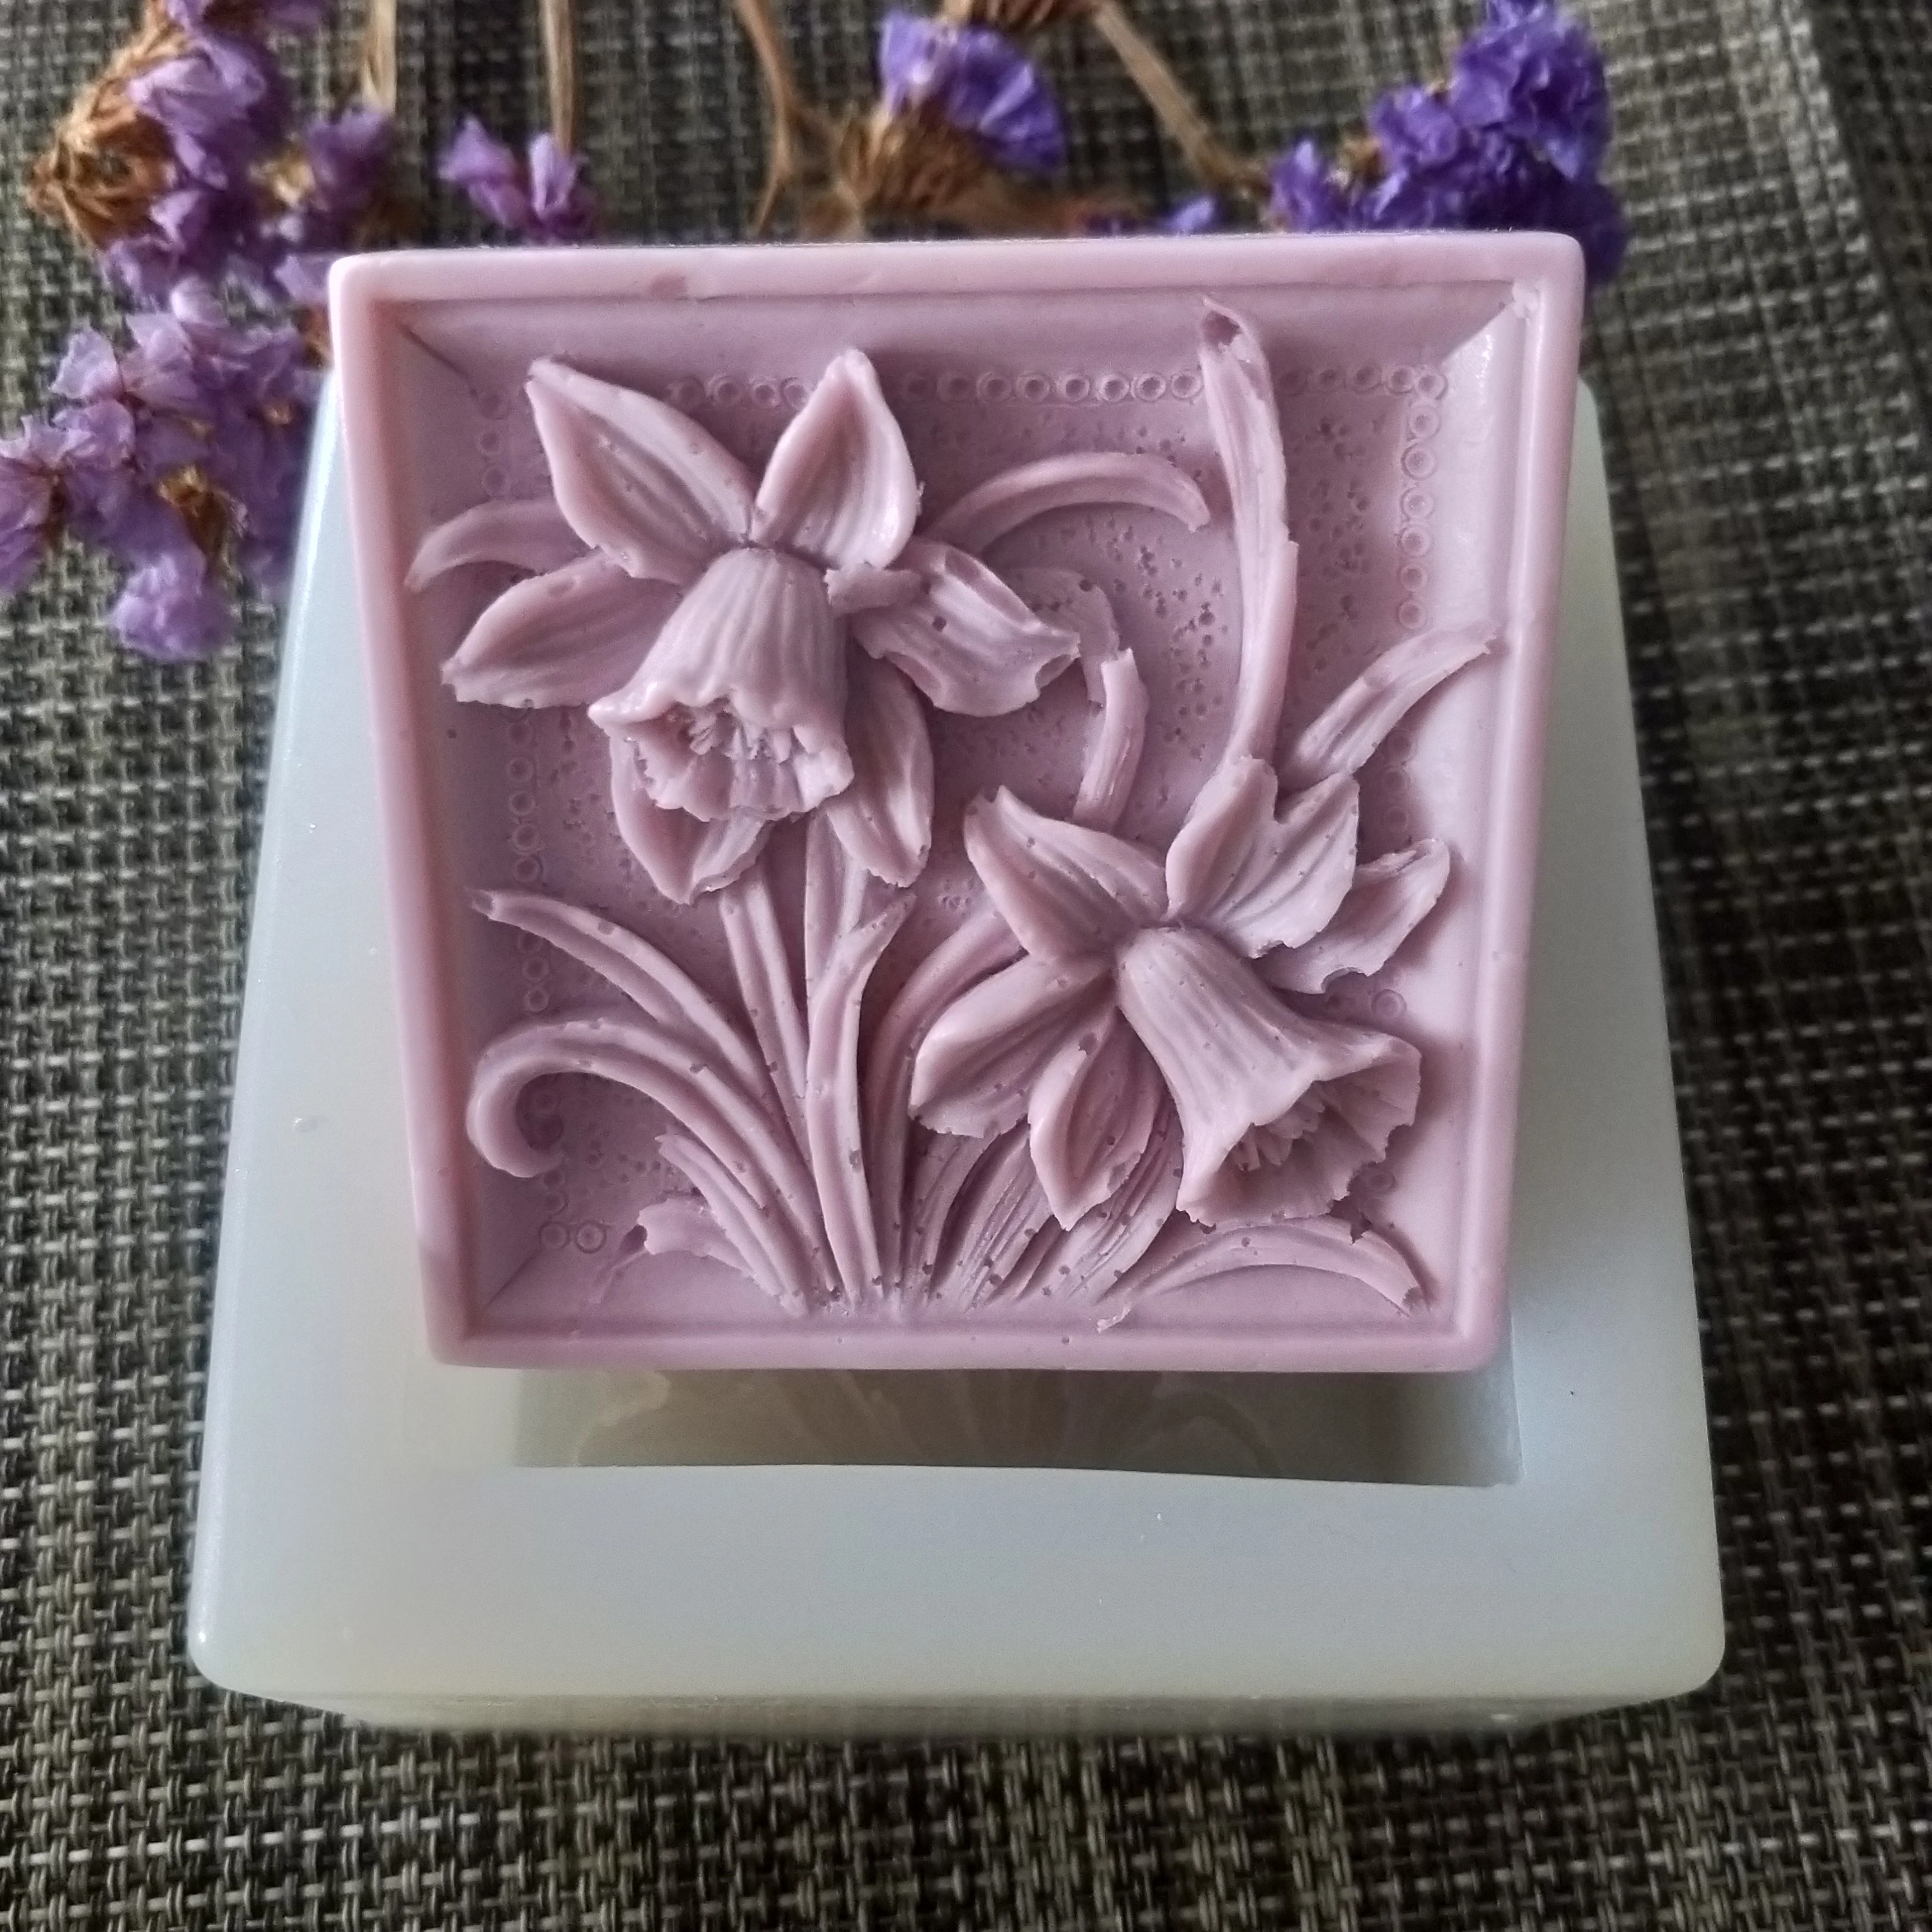 

HC0131 PRZY Campanula квадратное мыло цветок силиконовая форма гипсовая шоколадная свеча конфетная форма глиняная Смола прессформы экологически чи...